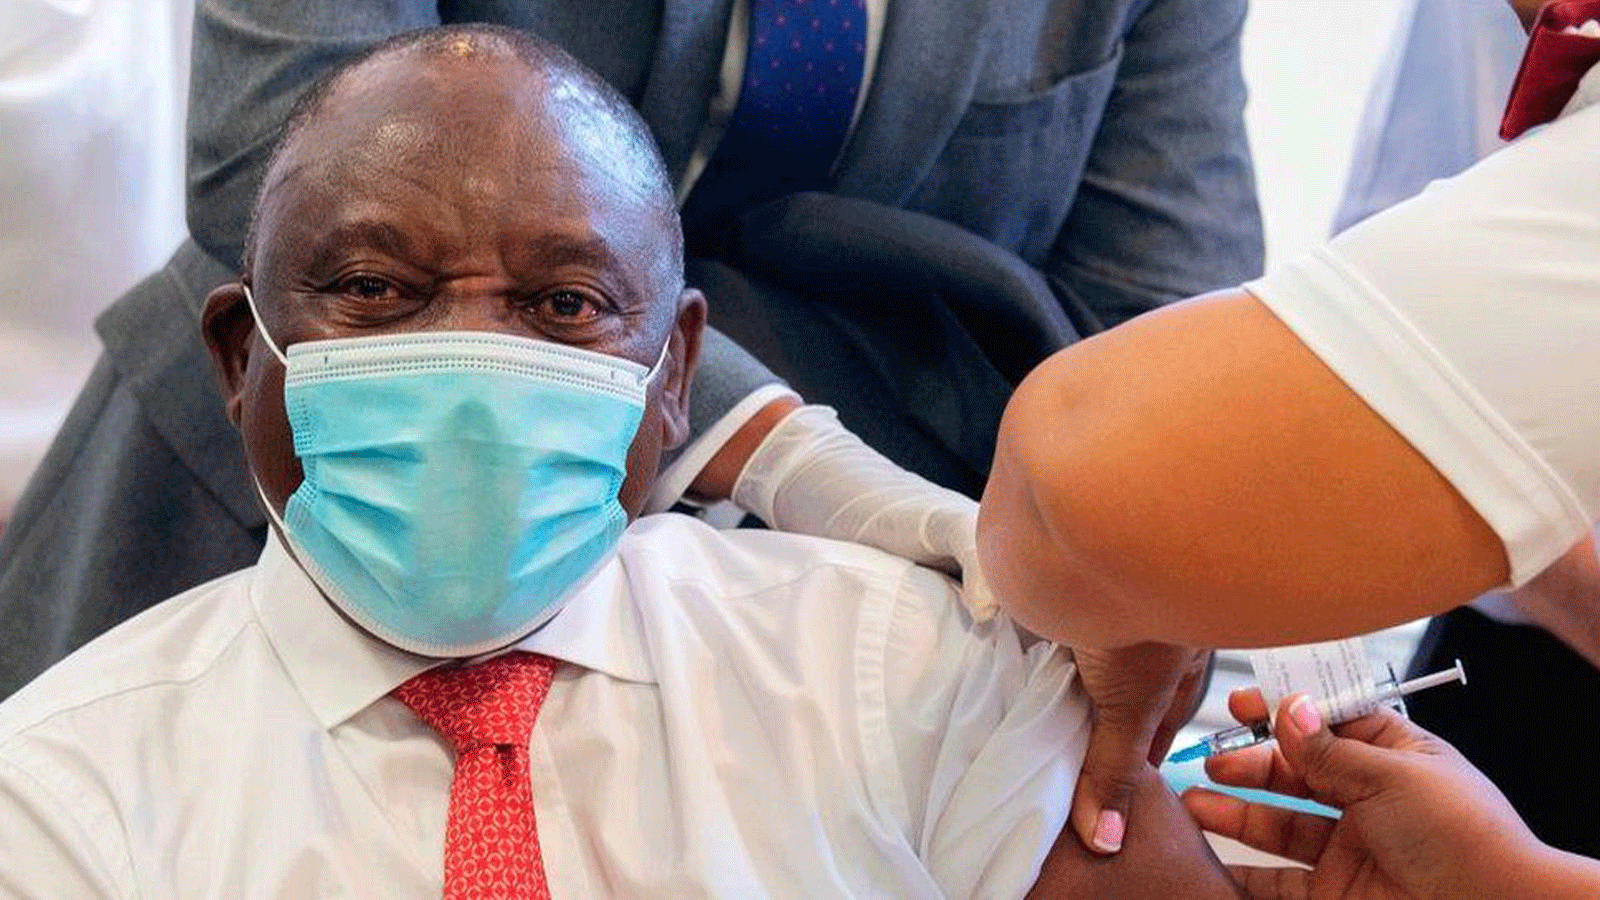 رئيس جنوب أفريقيا سيريل رامافوزا كان من أول المطعمين في شباط/ فبراير، قبل أن تواجه المشاكل برنامج التطعيم